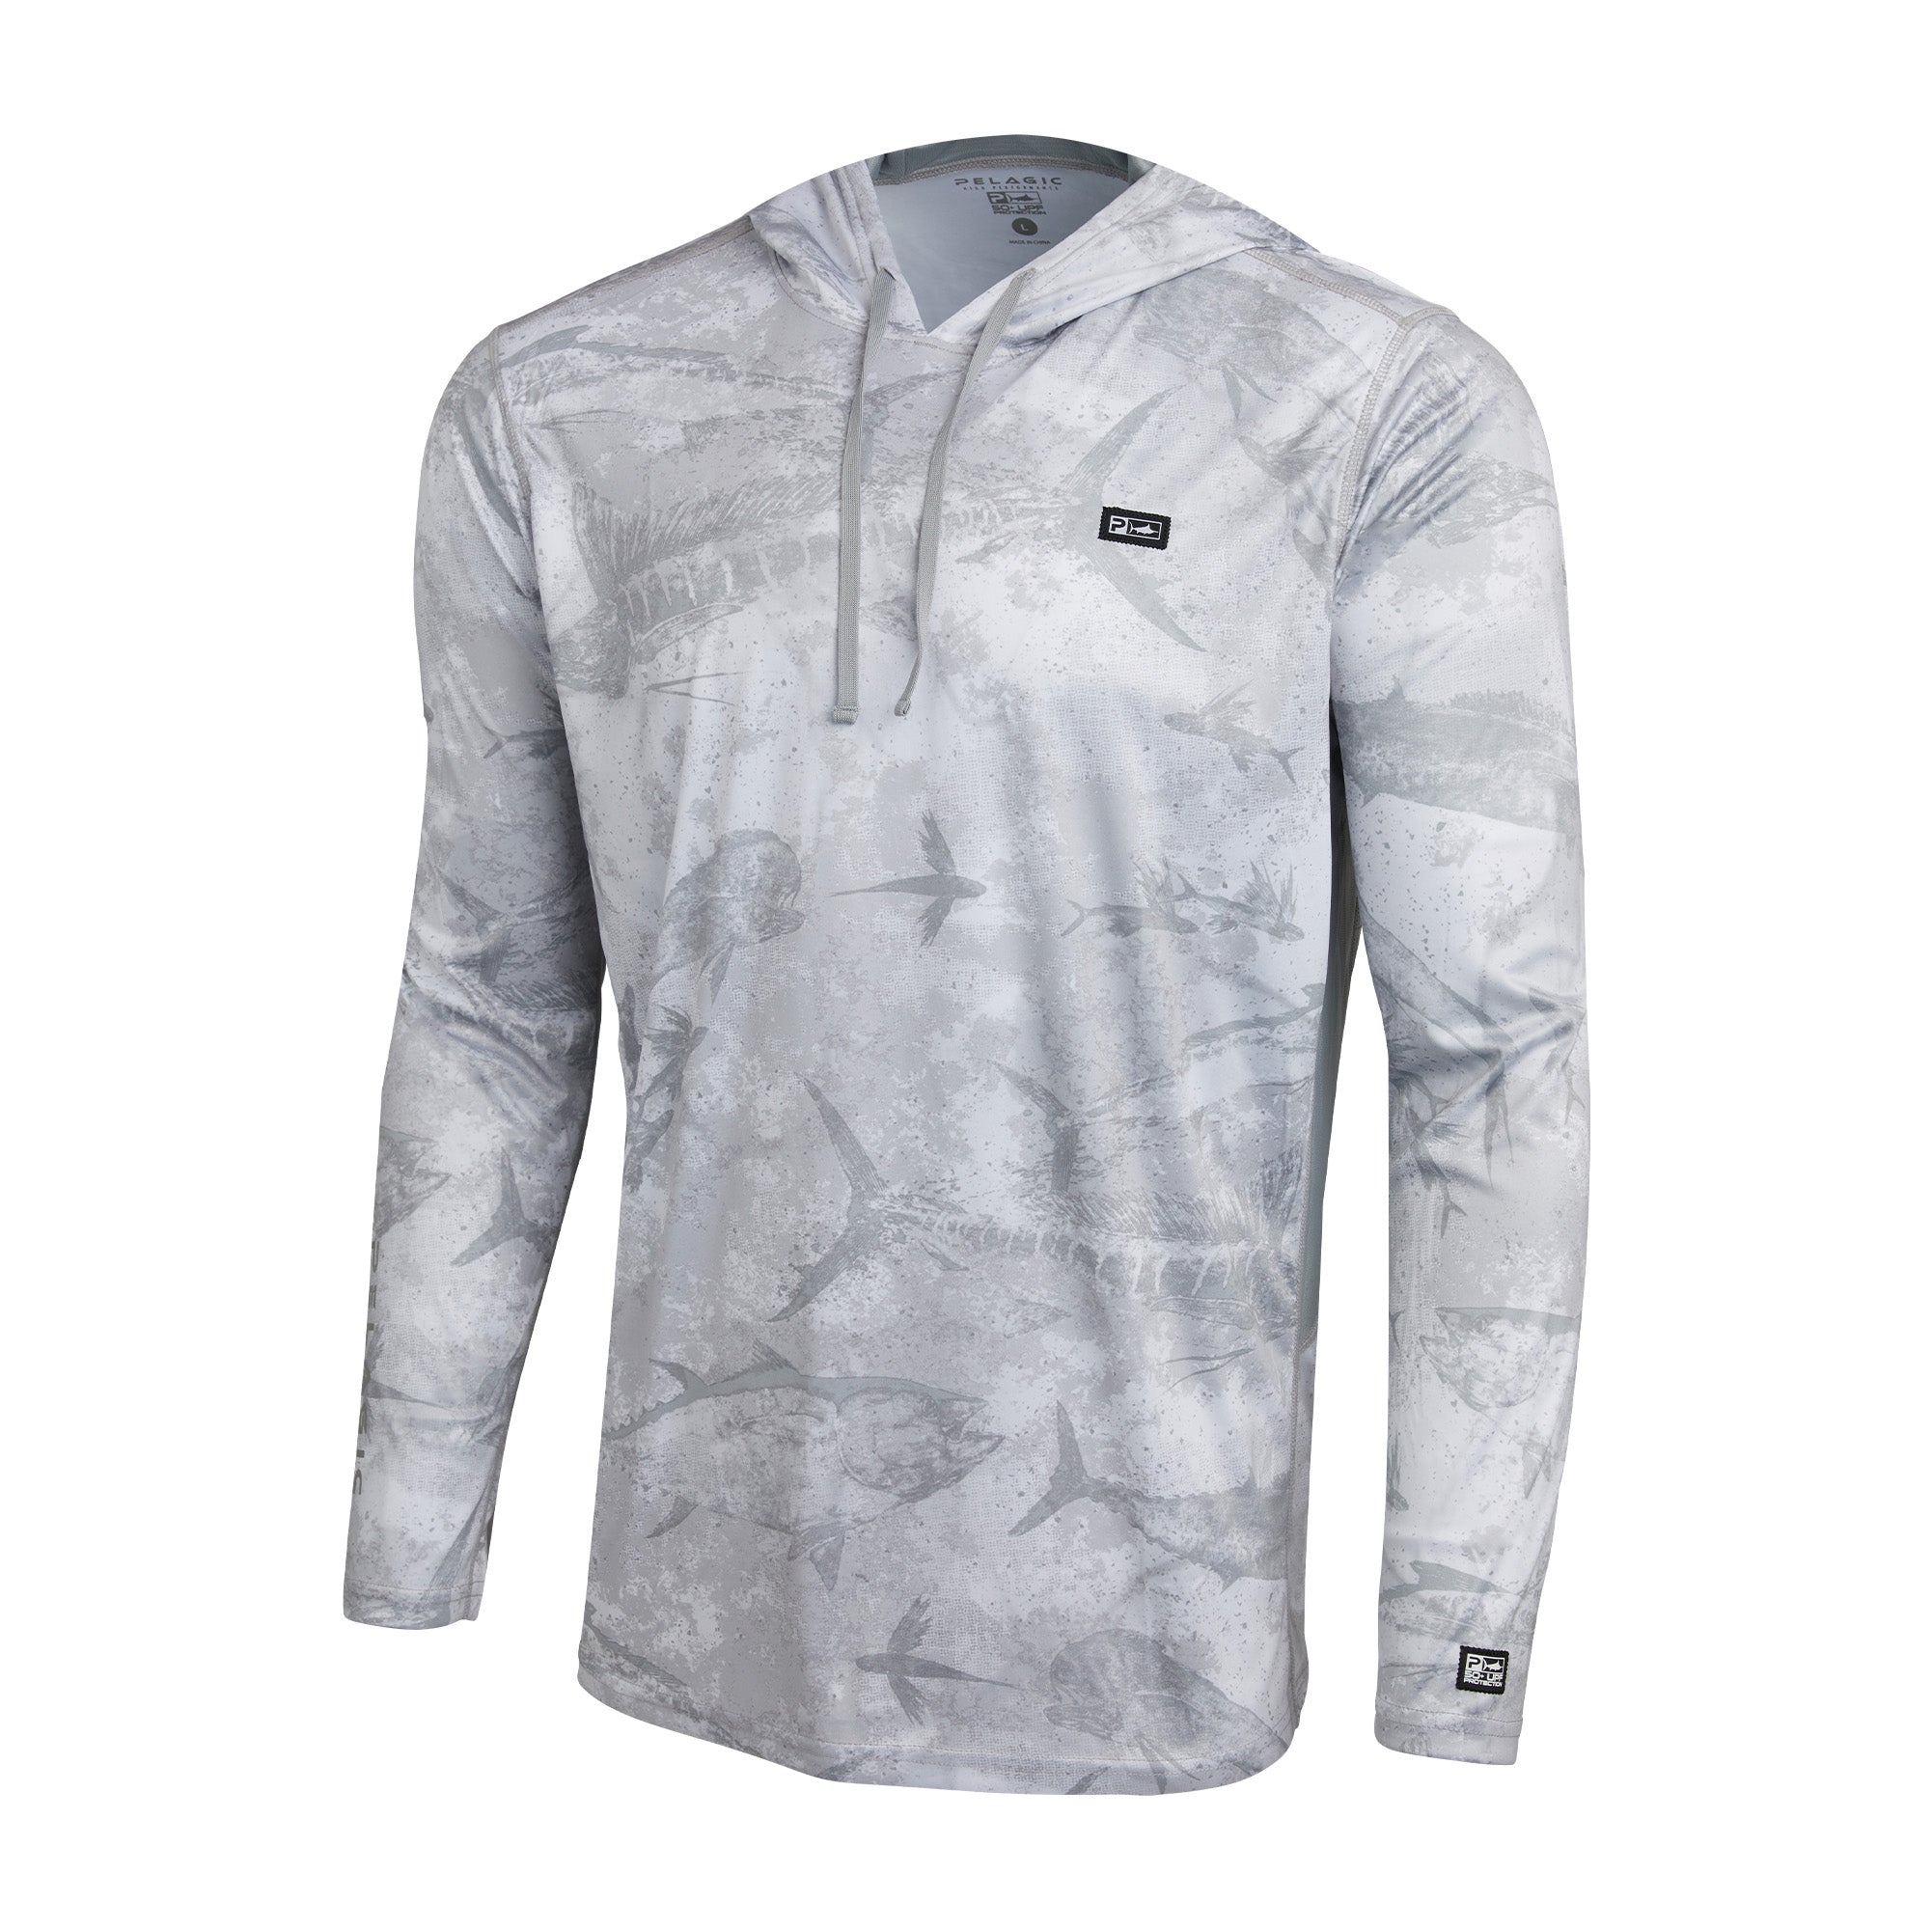 Vaportek Hooded Fishing Shirt Light Grey / S